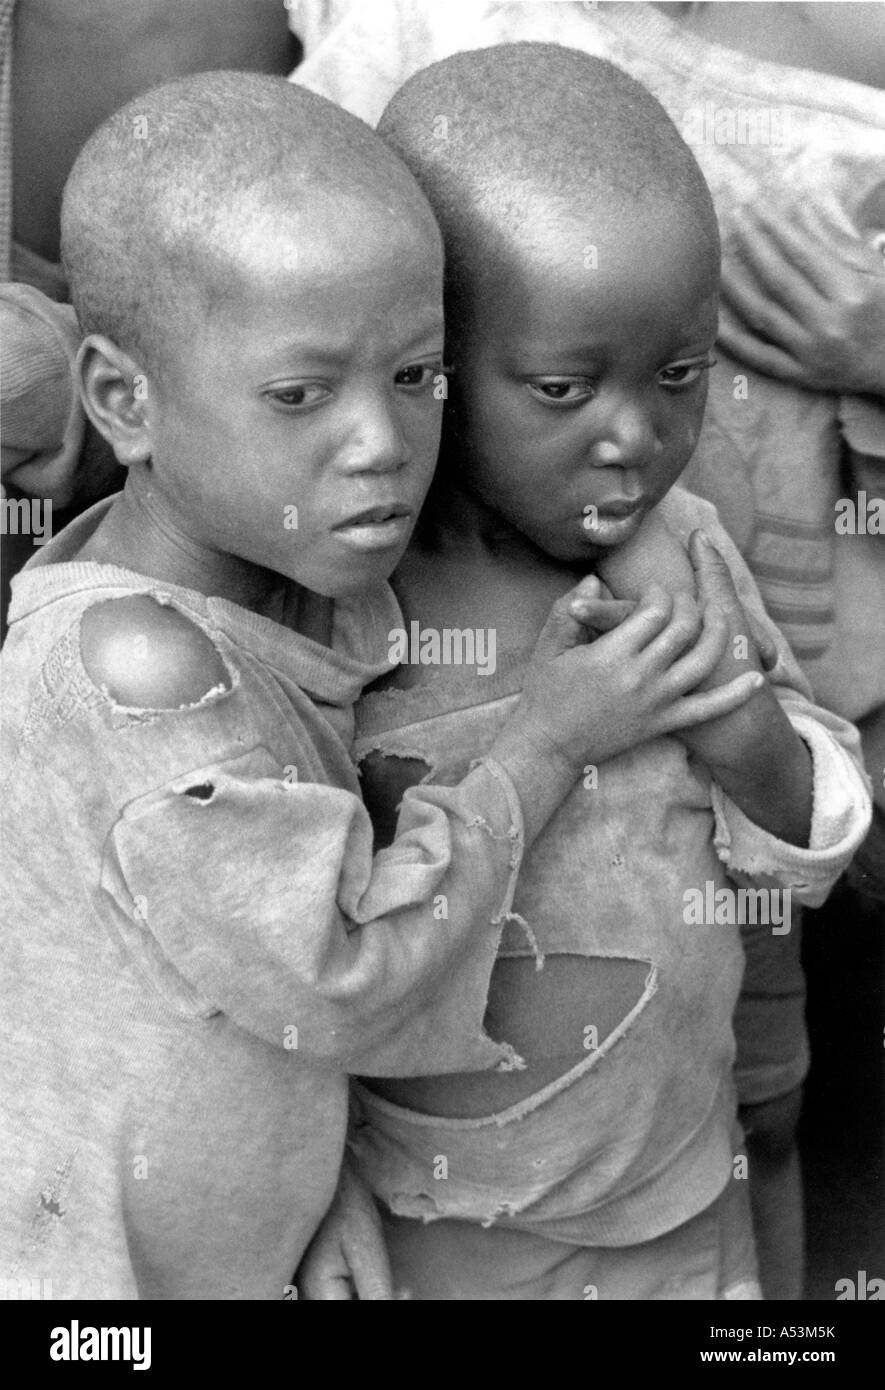 Painet ha1605 322 in bianco e nero lo stress di profughi hutu del Burundi ngara tanzania paese nazione in via di sviluppo meno economicamente Foto Stock